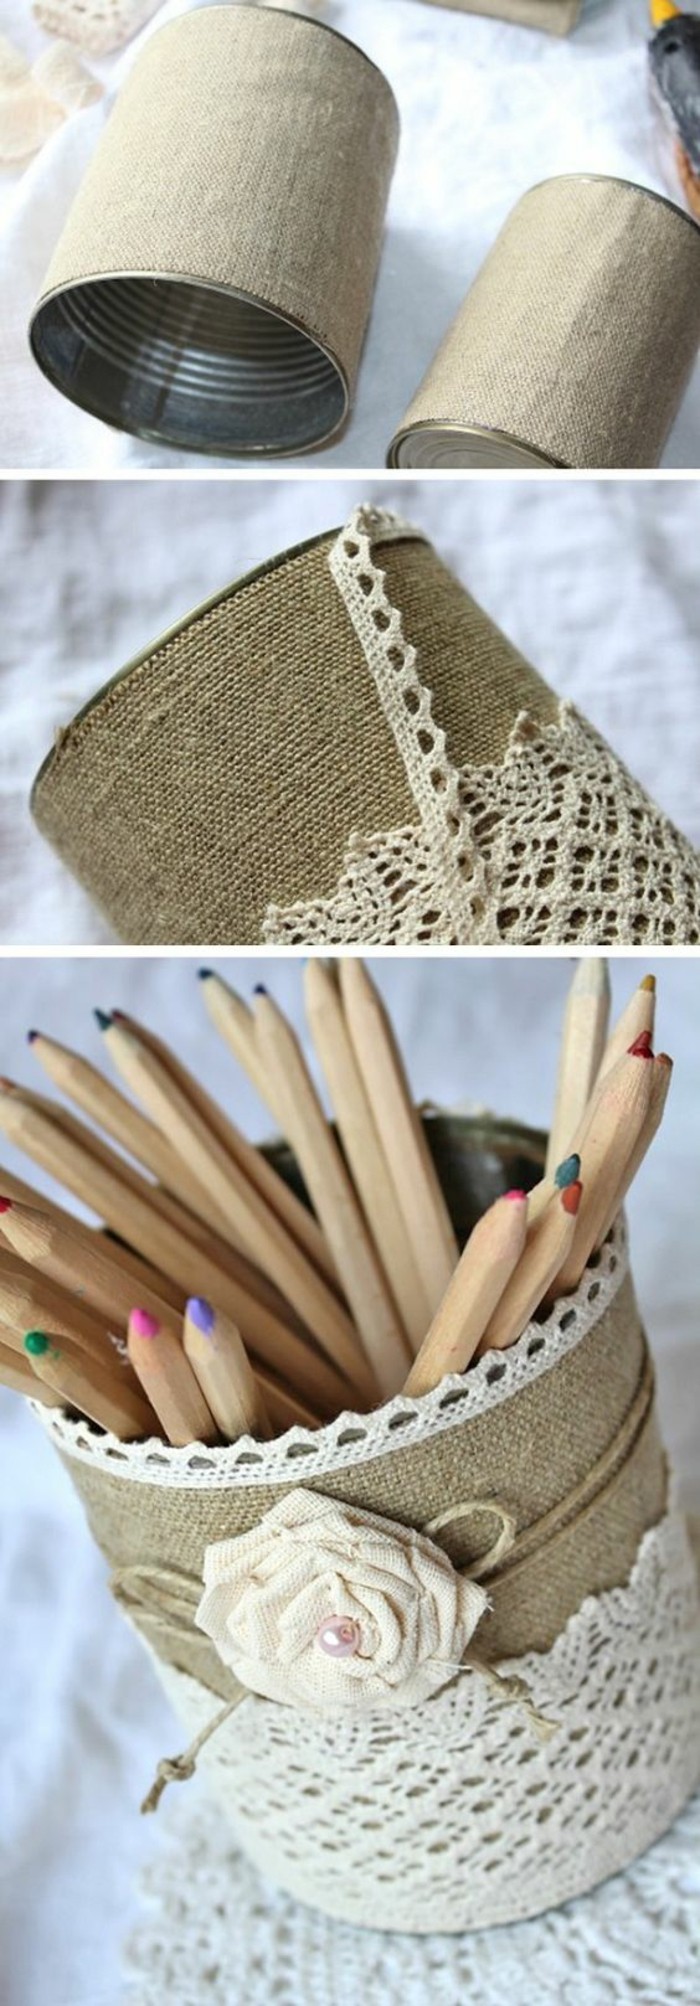 que faire avec boite de conserve vide, fabriquer porte-crayons en canette, comment décorer une boîte conserve avec tissu et dentelle